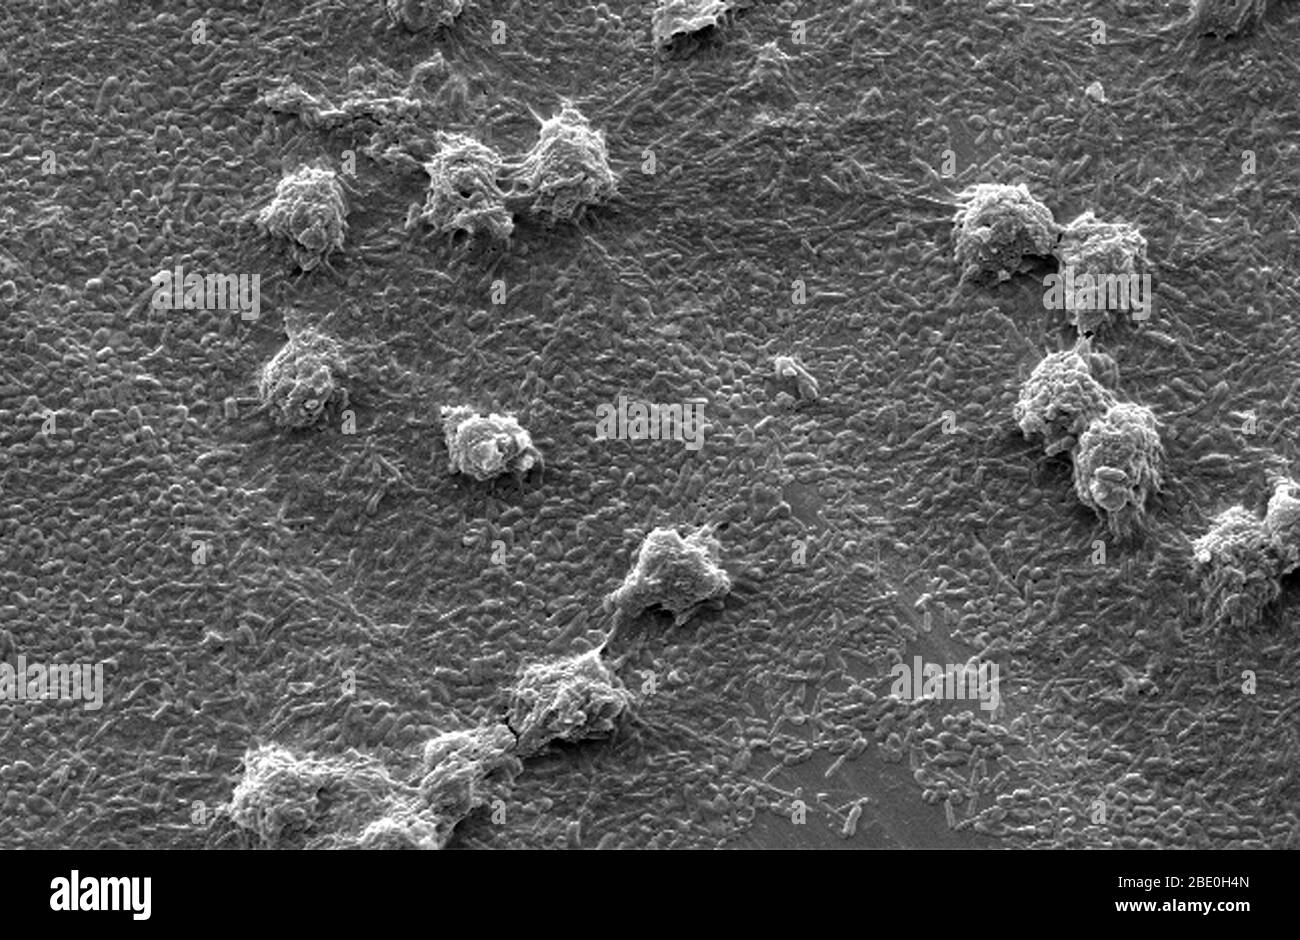 Micrografia elettronica a scansione (SEM) che mostra morfologia ultrastrutturale esibita da un certo numero di trofozoiti di Vermamoeba vermiformis (Hartmannella) amebae. Nell'ambito di uno studio per determinare se i batteri Legionella pneumophila possono colonizzare e crescere in biofilm con o senza la presenza di V. vermiformis, questi protozoi sono stati situati sopra un biofilm di base composto da Pseudomonas aeruginosa, Klebsiella pneumoniae e un batterio Flavobatterium sp. Si noti che le amebe erano pascolo su questi batteri che rivela la superficie del coupon di acciaio inossidabile scured. Vermamoeba vermiformis un free-l Foto Stock